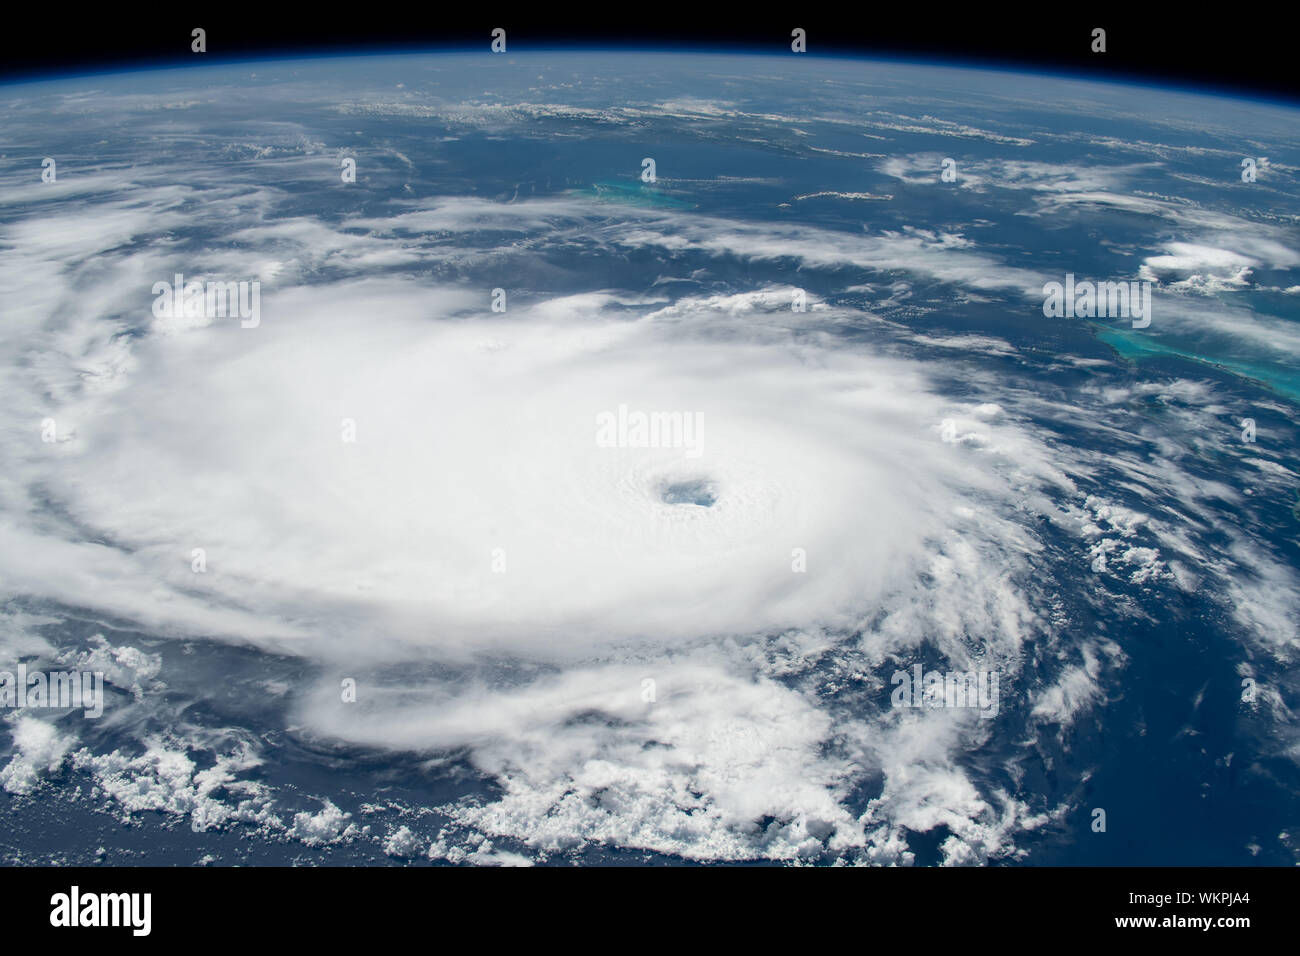 International Space Station. 31 August, 2019. Cyclonic Wolken des Hurrikans Dorian von der Internationalen Raumstation gesehen wie es bewegt sich über das Nassau auf den Bahamas August 31, 2019 in den Atlantischen Ozean. Die aktuelle Prognose verlangt Dorian vor dem Landfall in Südflorida späten Montag über offenes Wasser zu der Kategorie 4 mit Windgeschwindigkeiten von 140 km/h zu stärken. Bild: NASA/Planetpix/Alamy leben Nachrichten Stockfoto